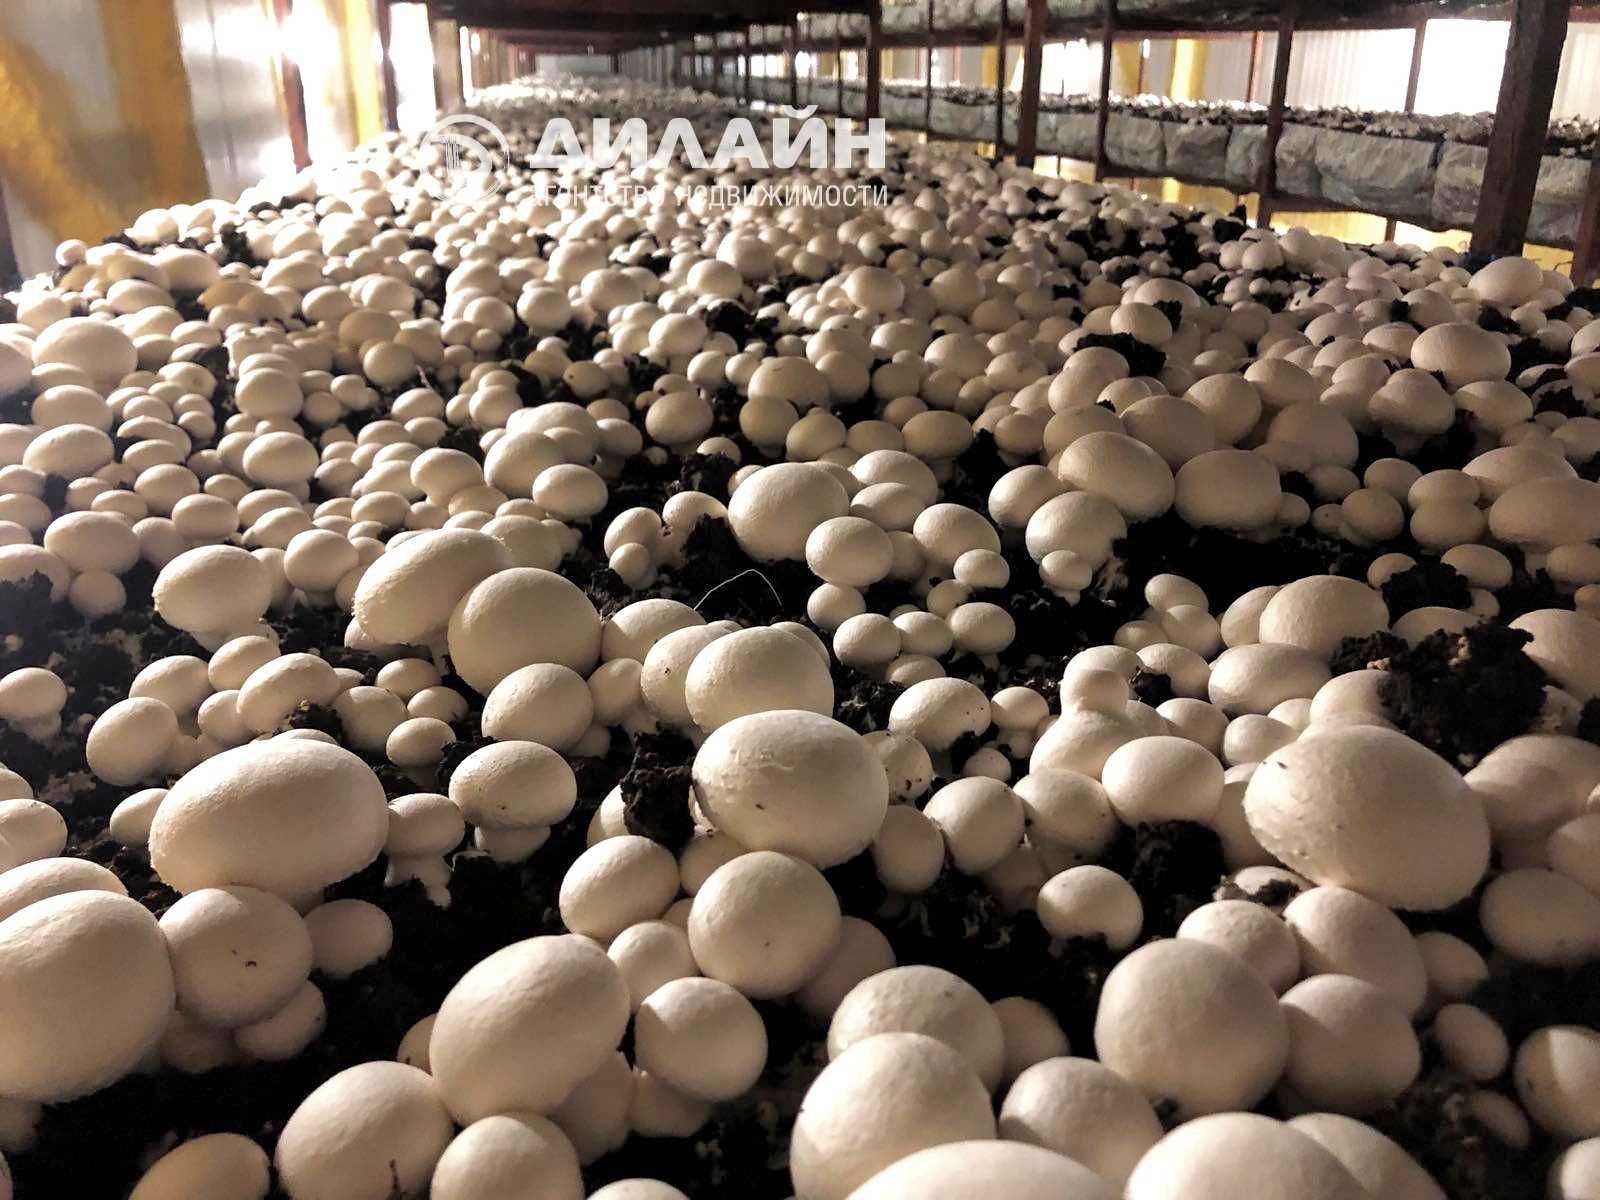 Фабрика–универсал: выращивание грибов, заморозка ягод, разведение рыб